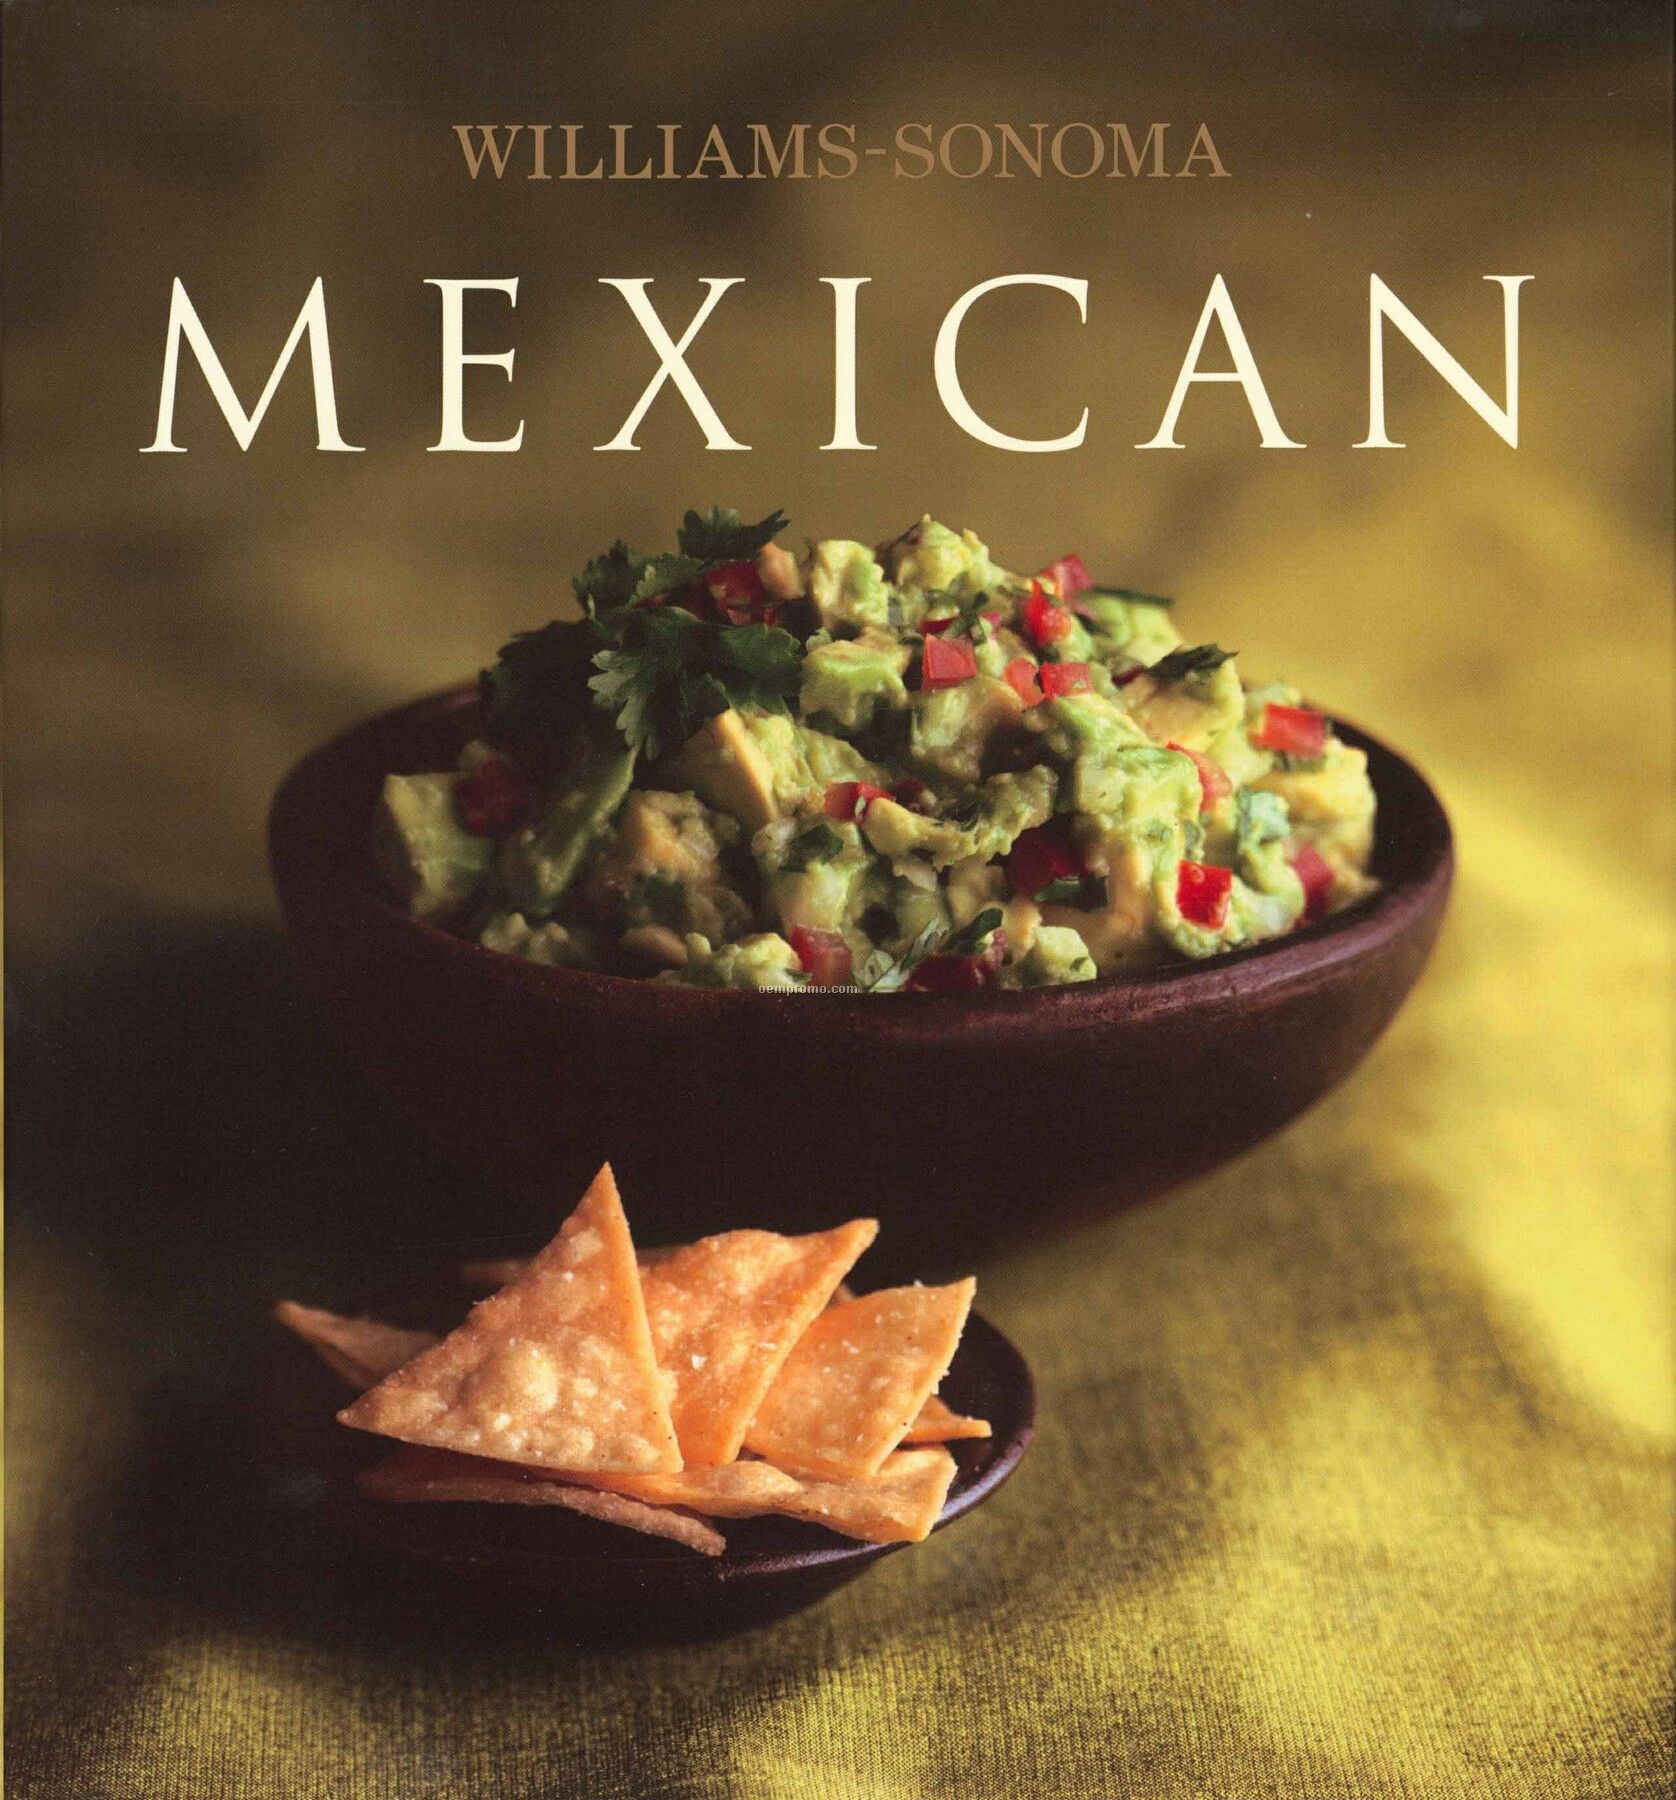 Williams-sonoma Mexican Cookbook